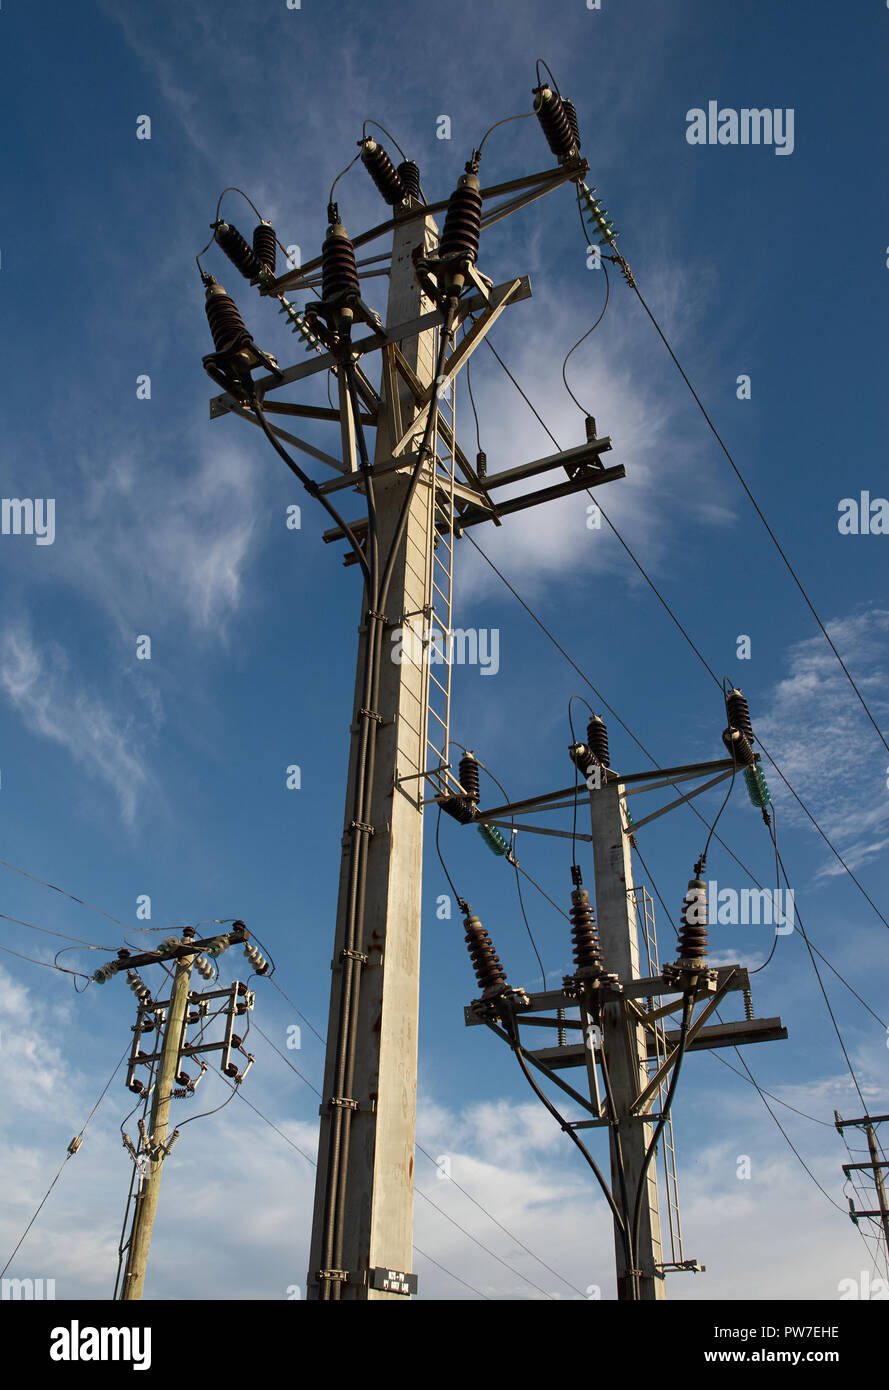 Drei elektrischen Strommasten Versorgung gegen einen blauen Morgenhimmel. Stockfoto